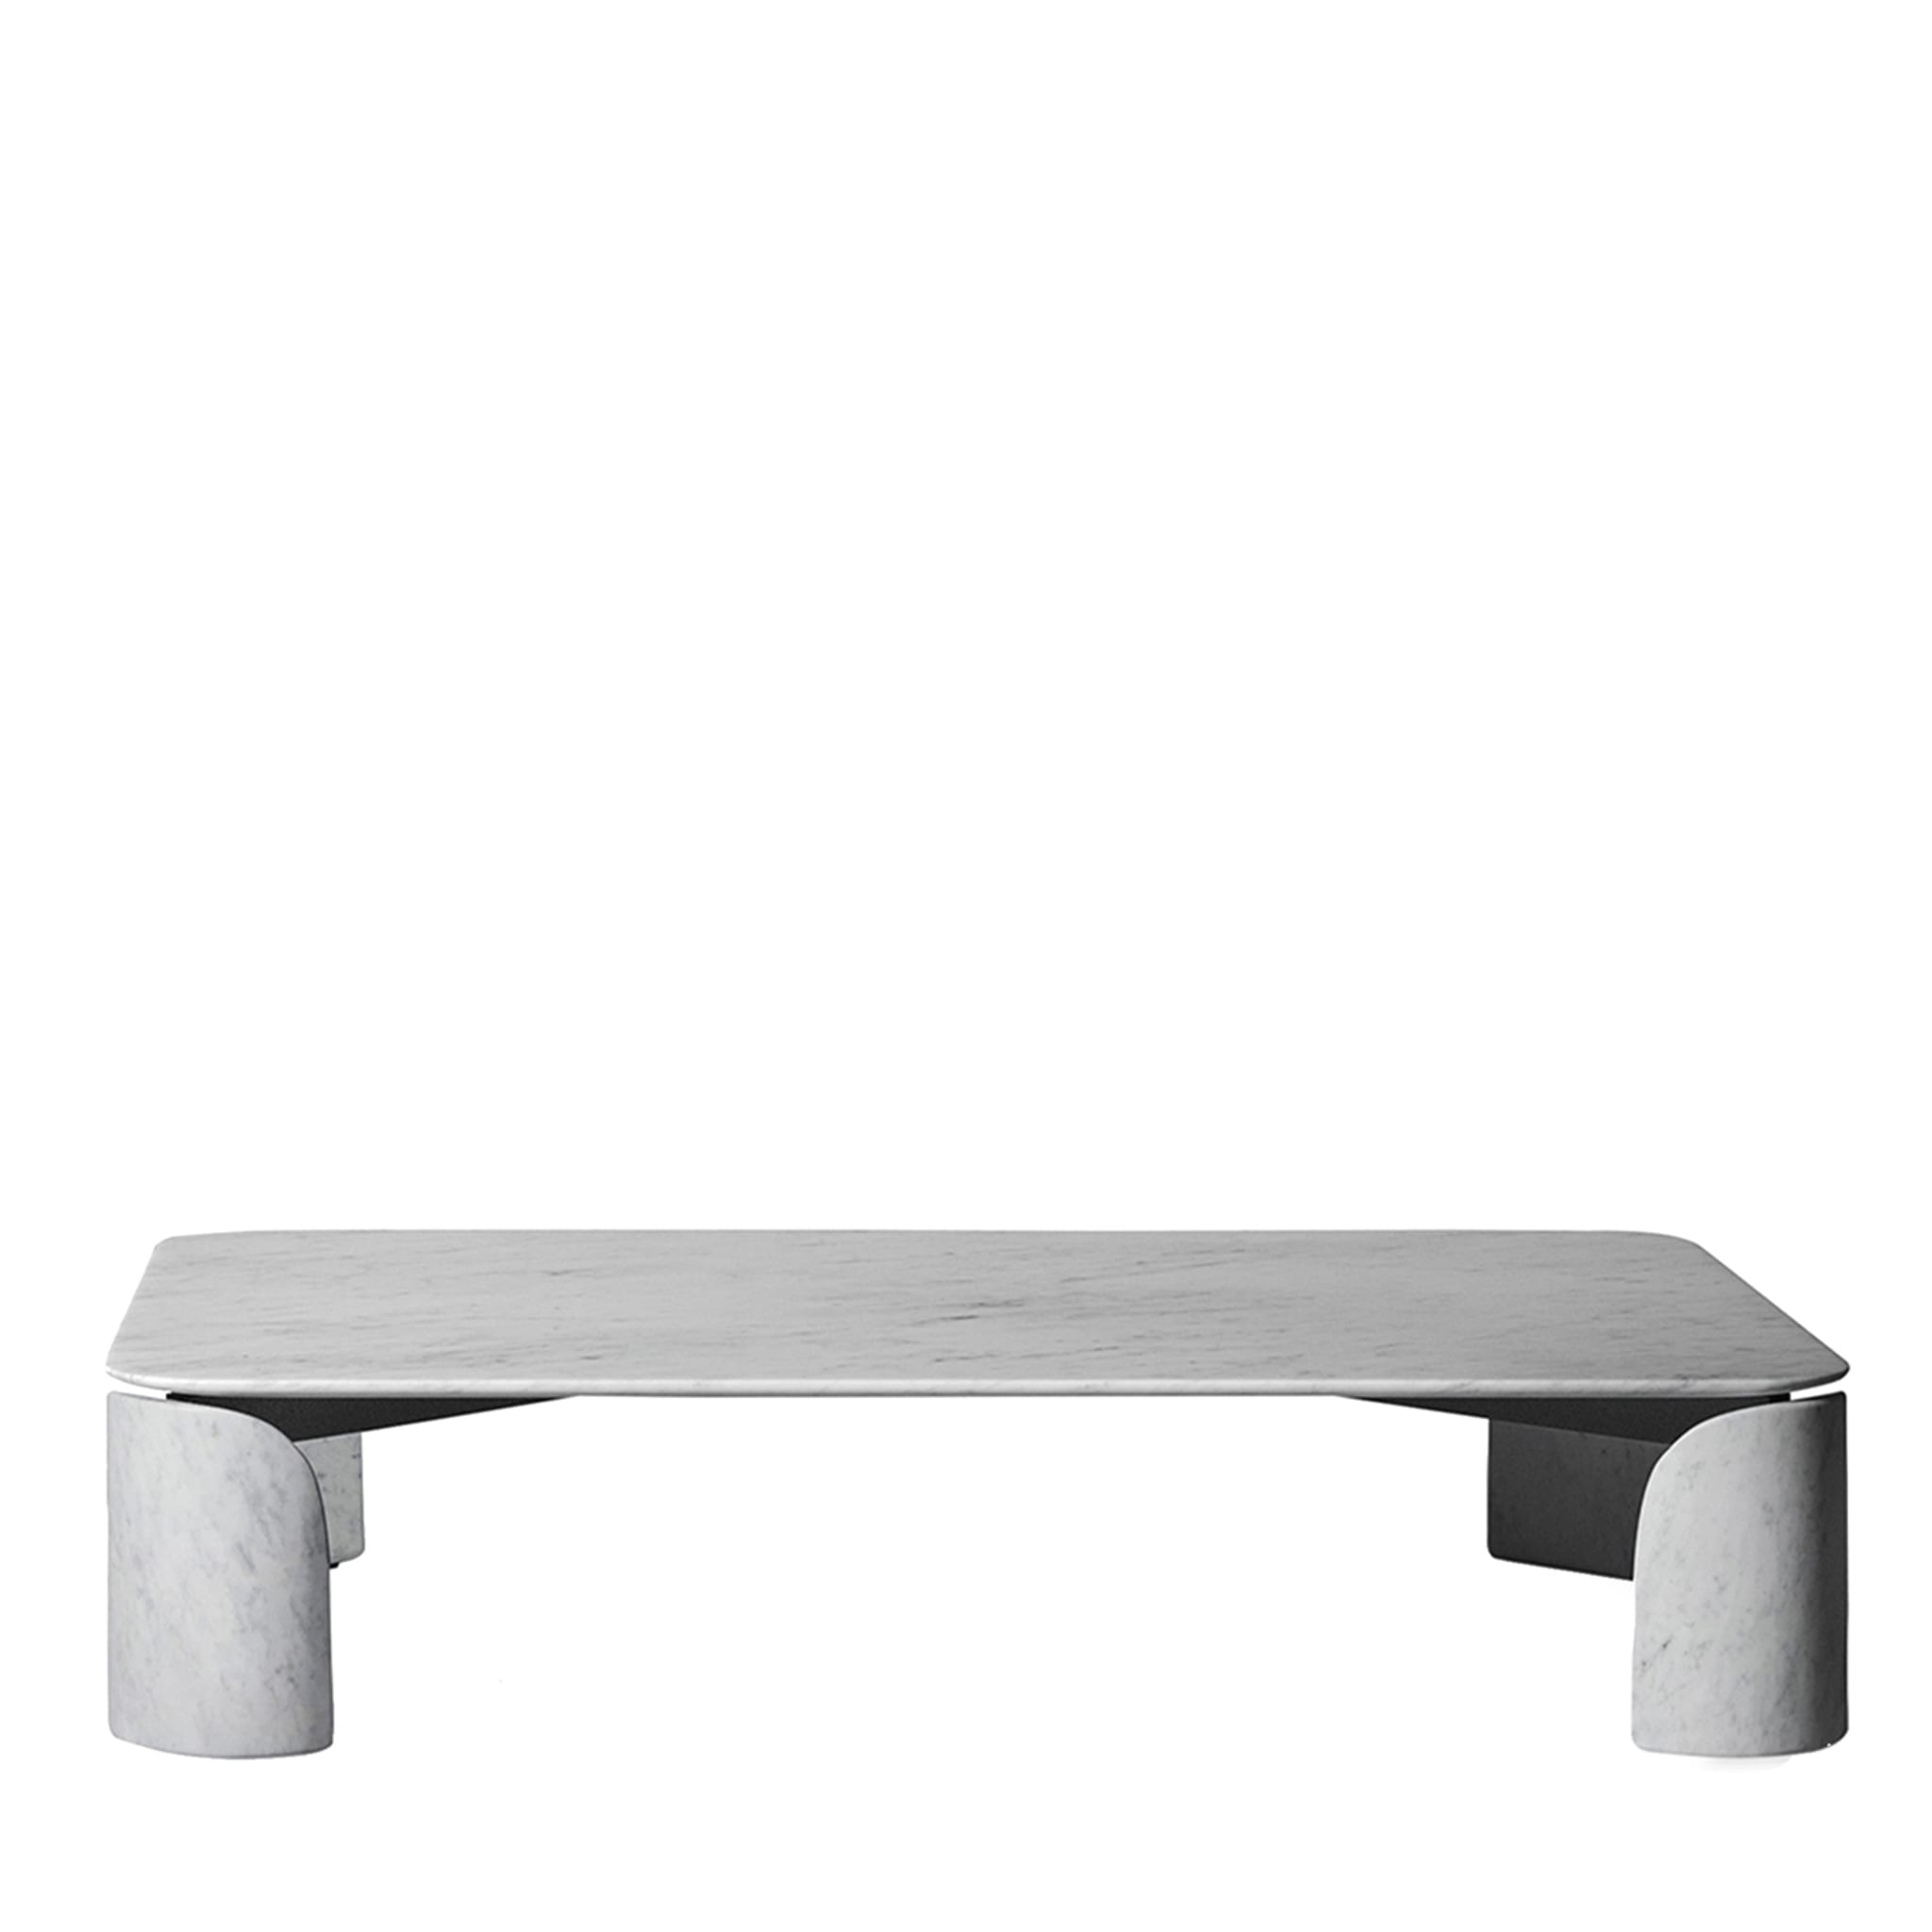 Taula White Carrara Rectangular Coffee Table - Main view